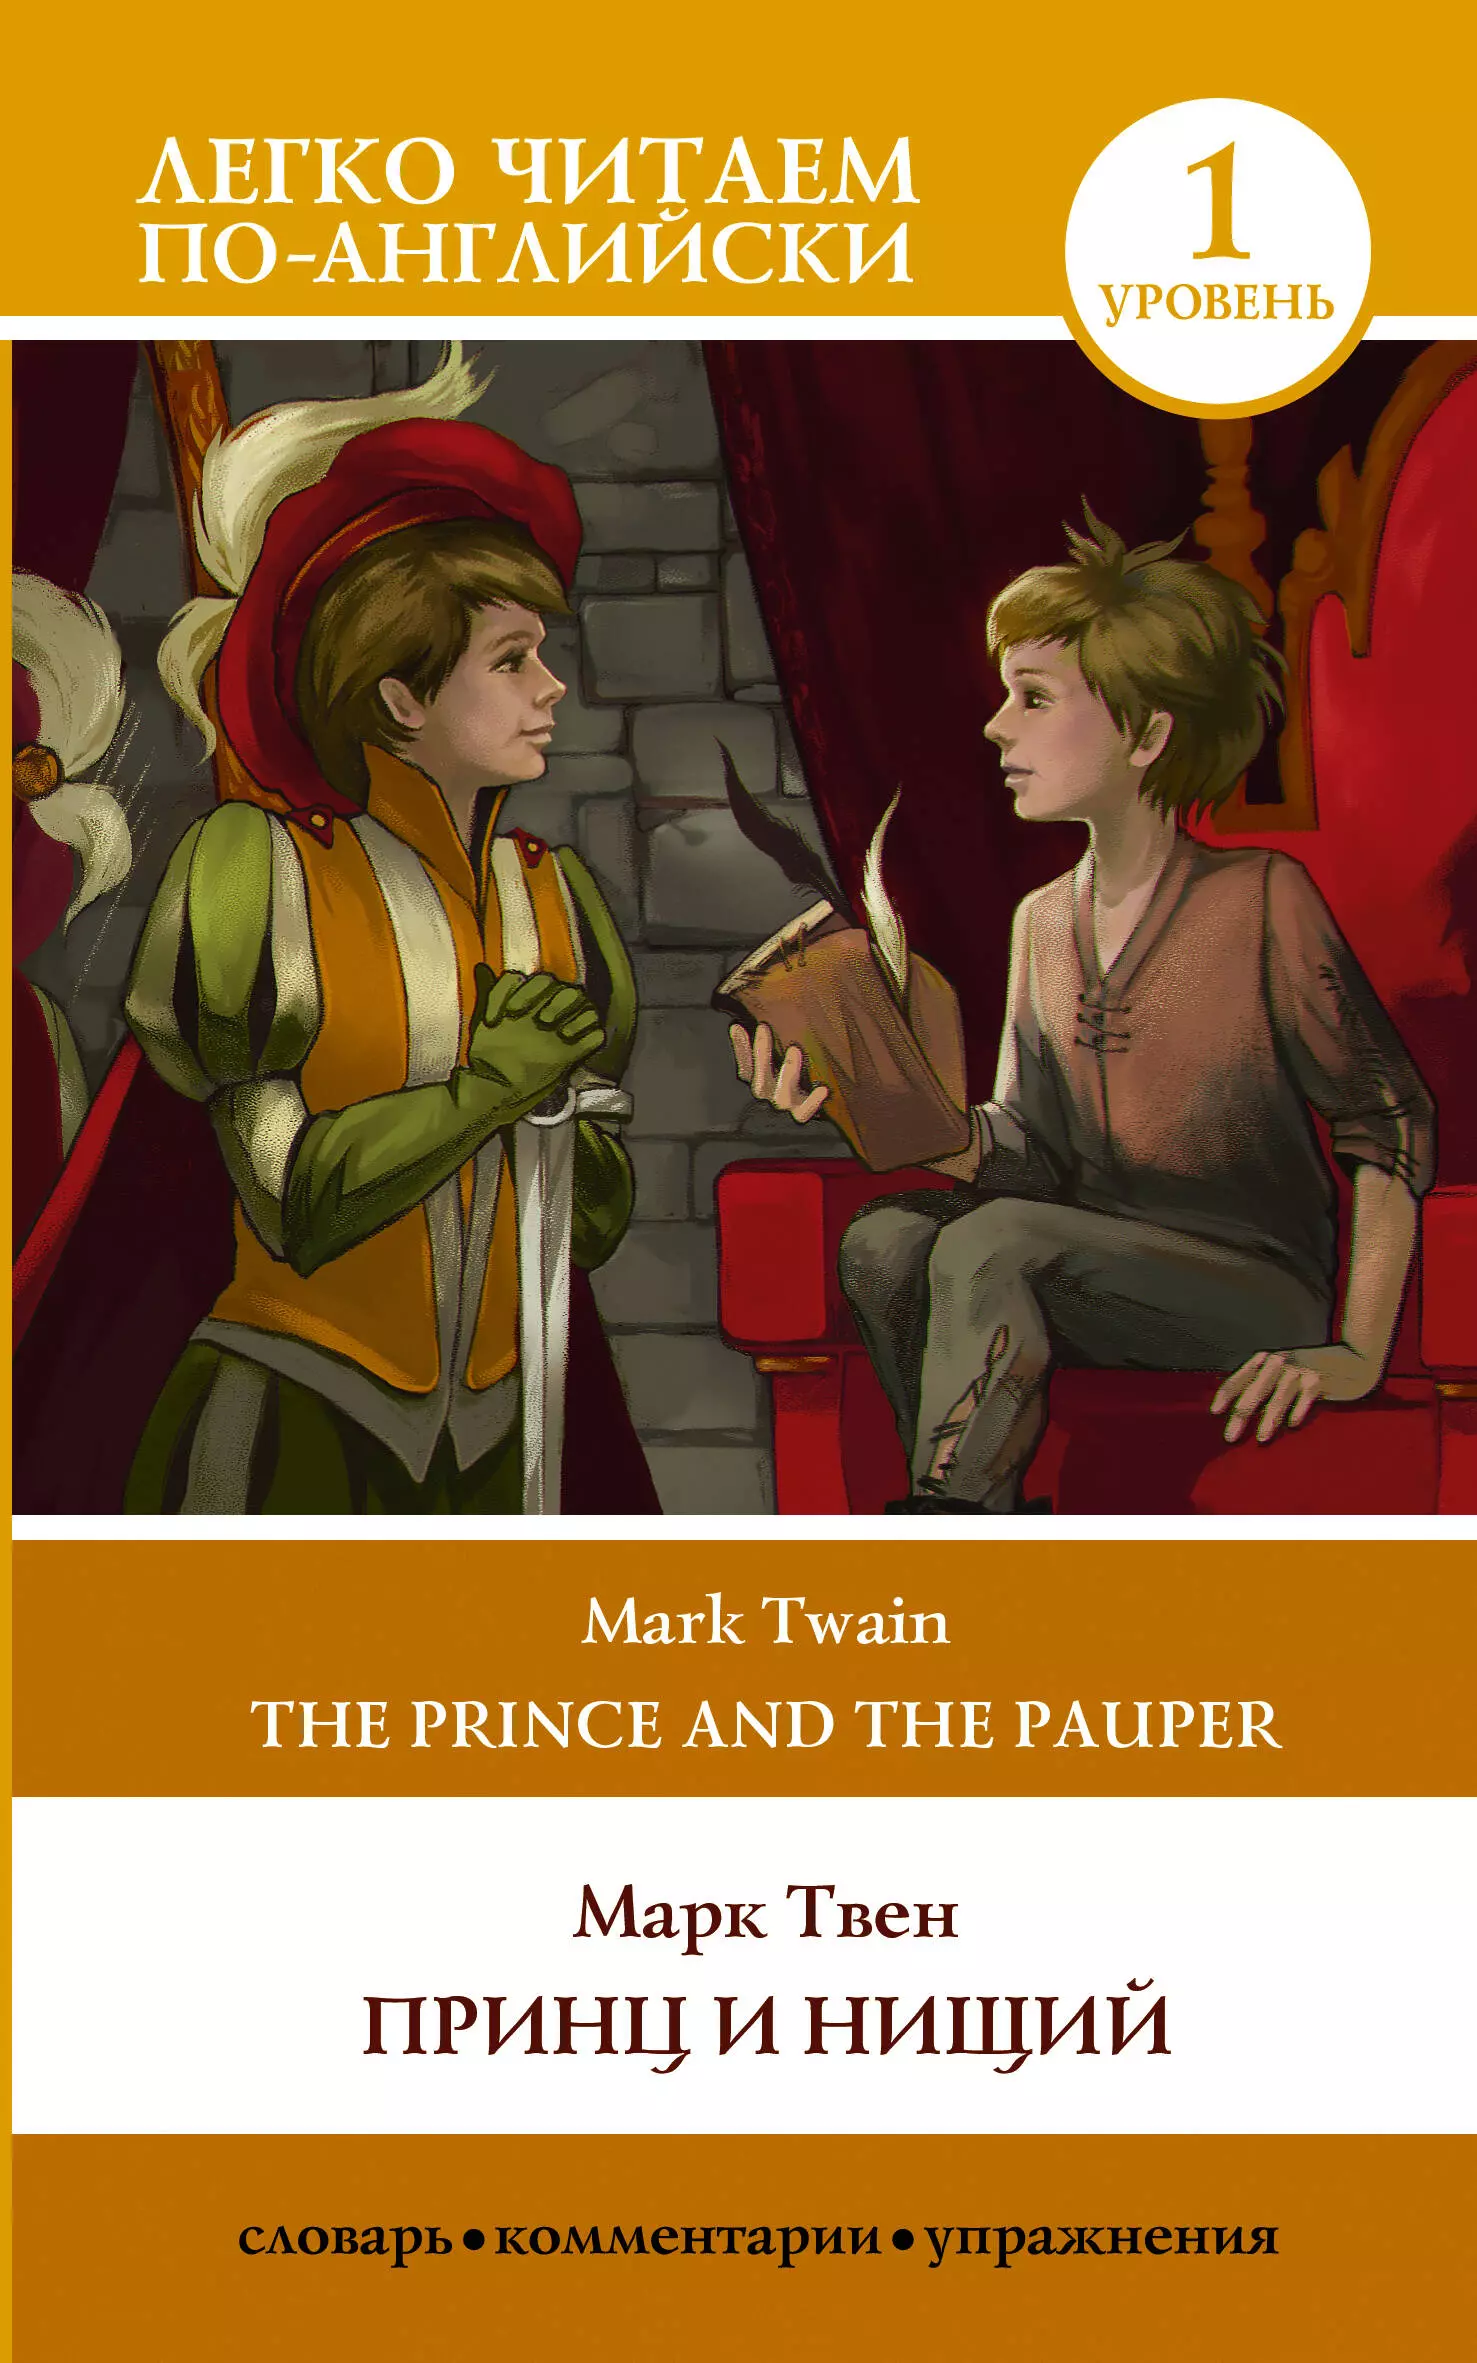 Принц и нищий. Уровень 1 / The Prince and the Pauper. Level 1 твен м принц и нищий the prince and the pauper домашнее чтение